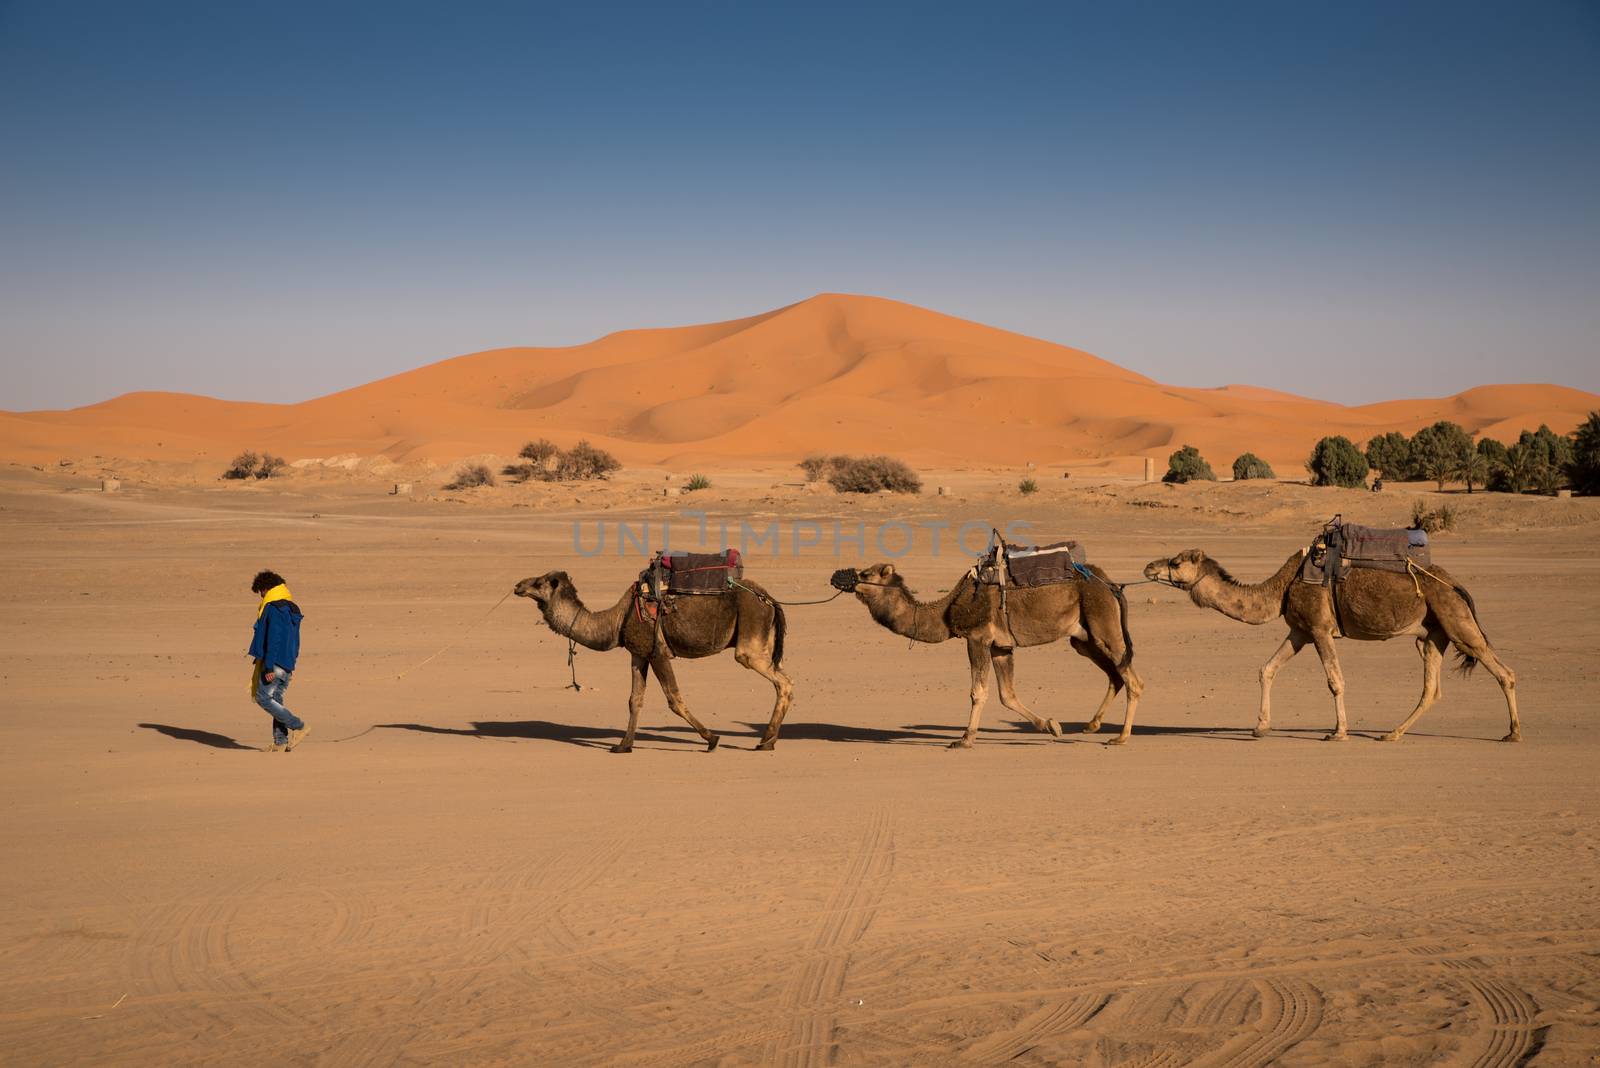 Berber man leading camel caravan, Hassilabied, Sahara Desert, Morocco